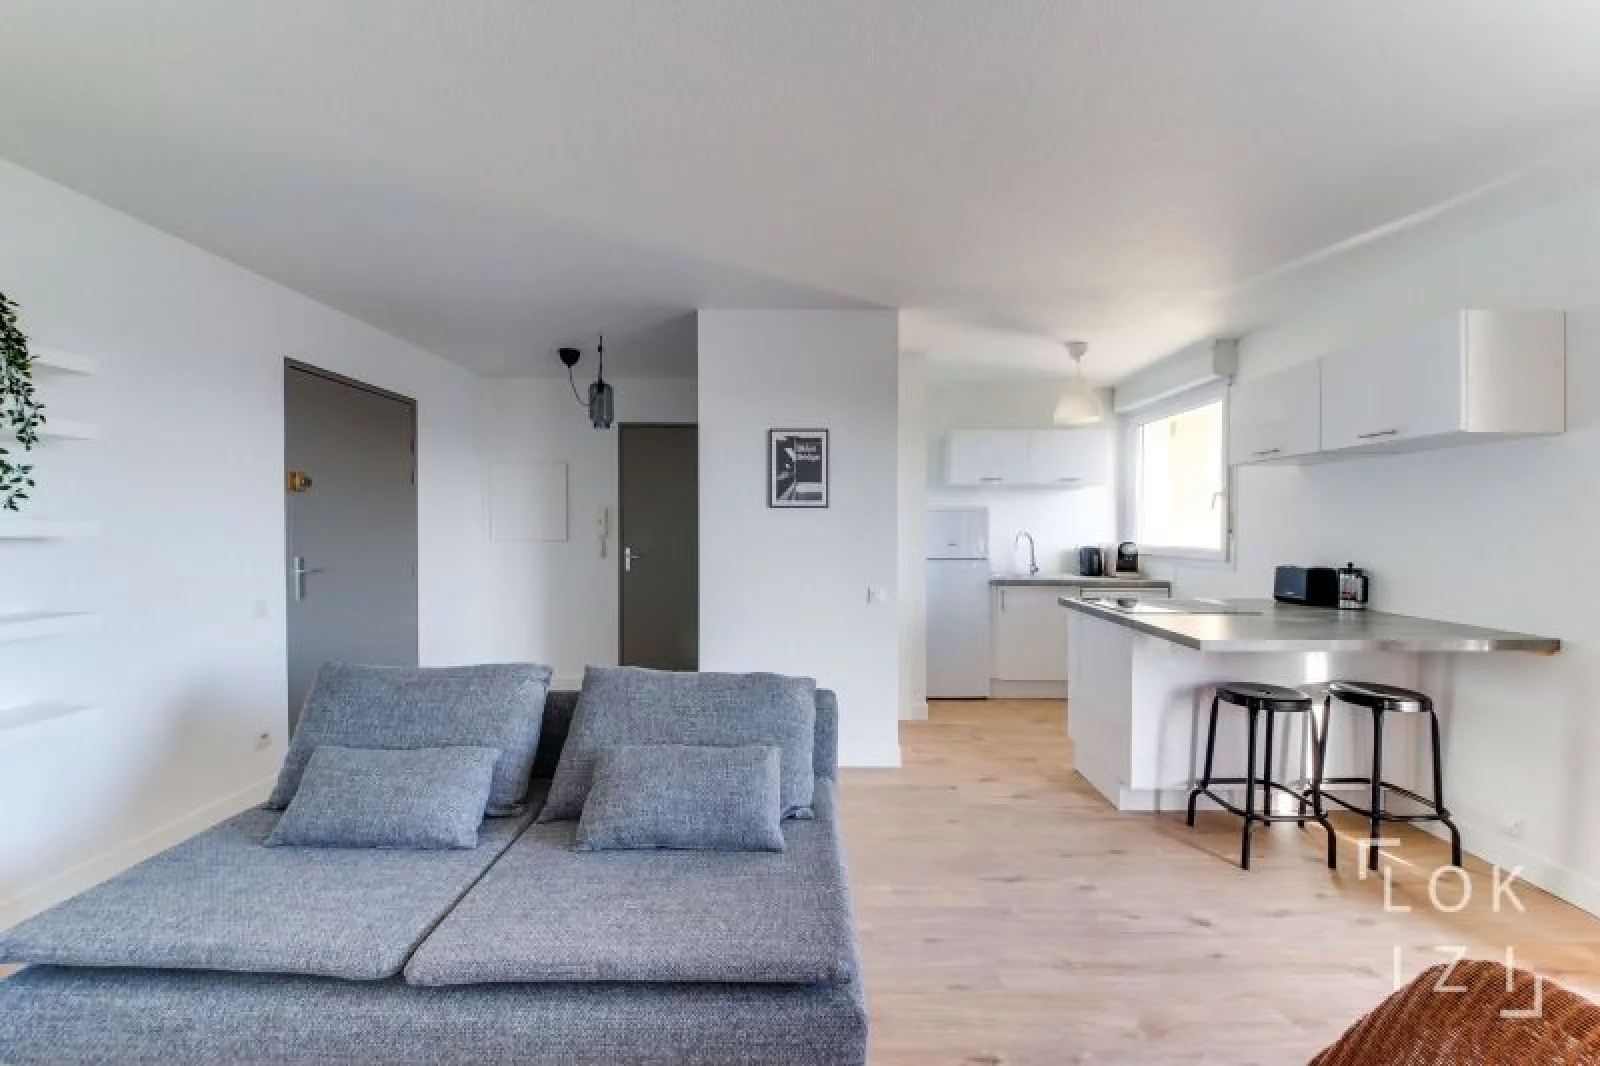 Location appartement meublé 2 pièces 50m² (Bordeaux - Ravezies)